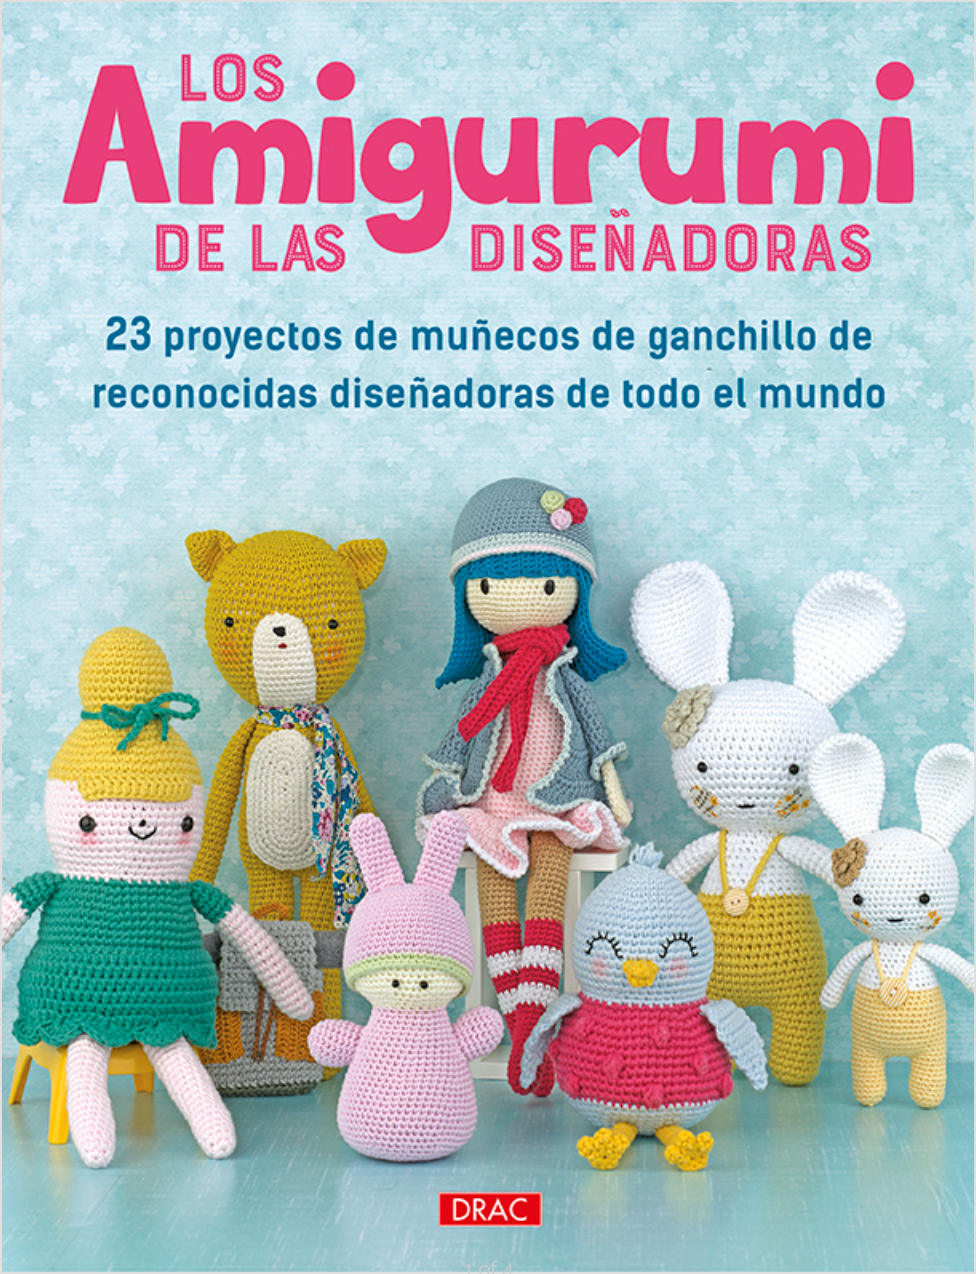 Los amigurumi de las diseñadoras - Libro físico en español – Cherry Wooly